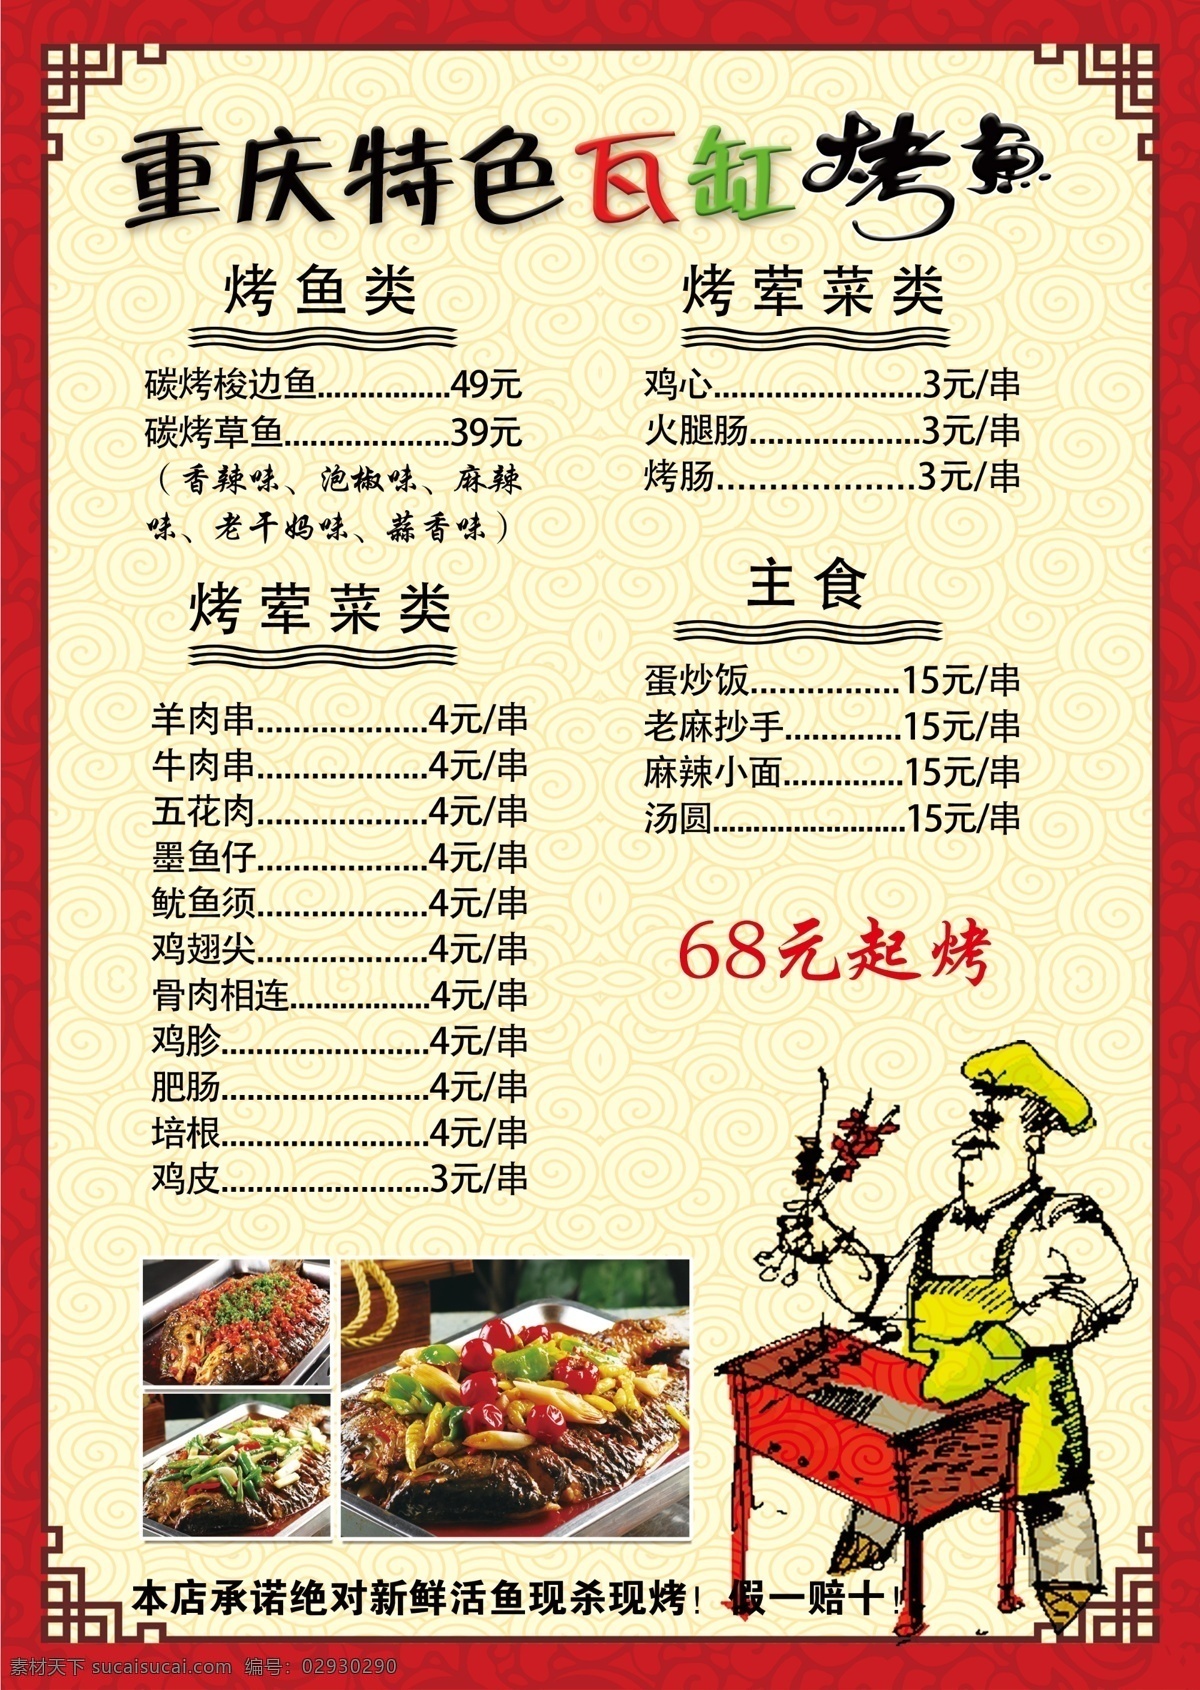 重庆 特色 瓦 缸 烤鱼 瓦缸烤鱼 菜单 菜谱 菜单菜谱